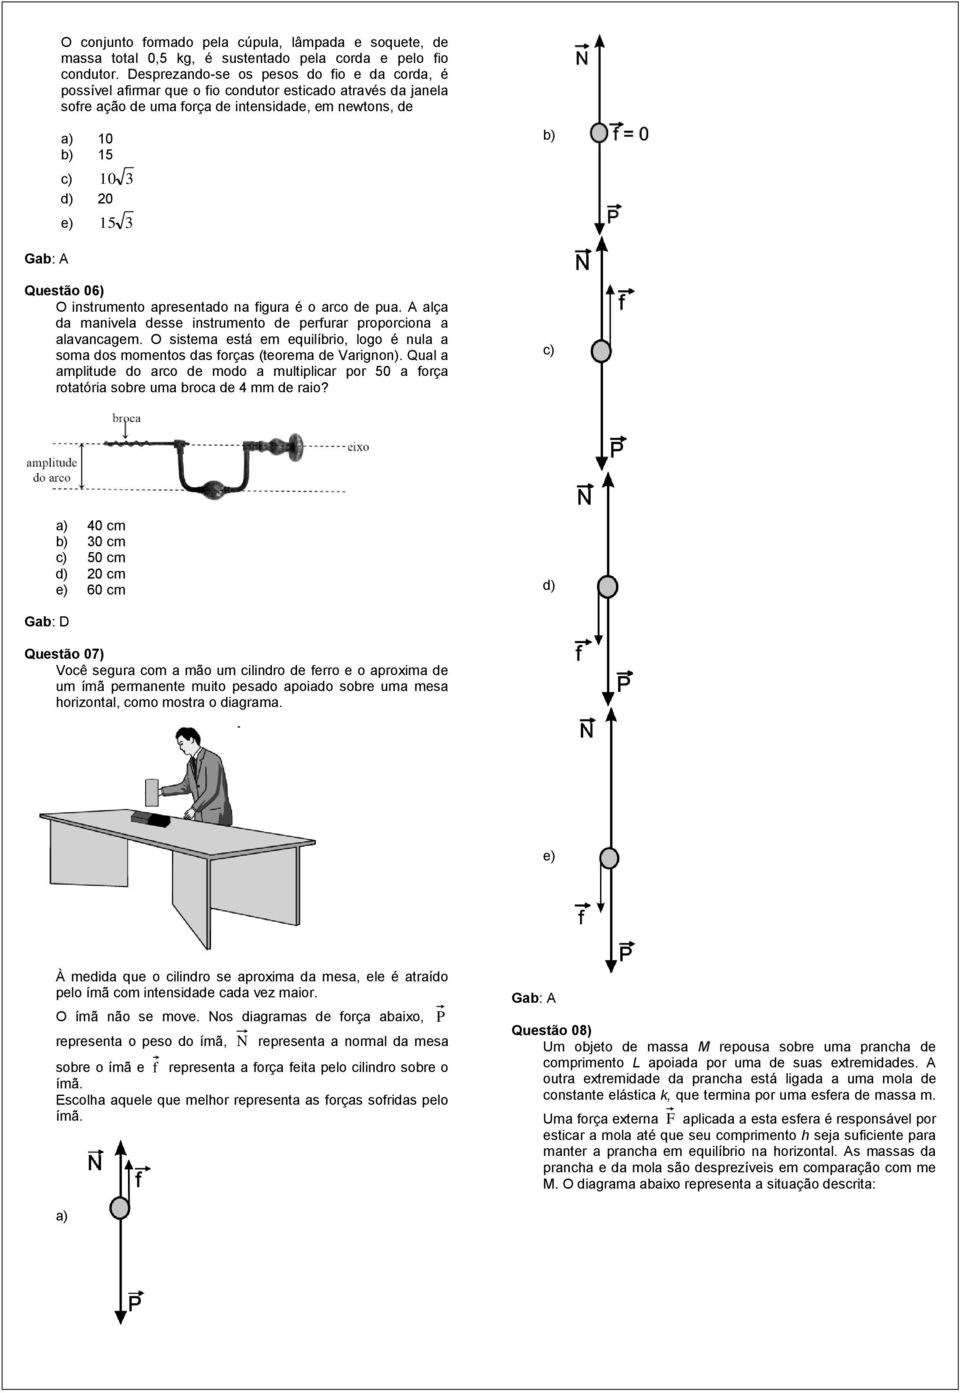 Questão 06) O instrumento apresentado na figura é o arco de pua. A alça da manivela desse instrumento de perfurar proporciona a alavancagem.